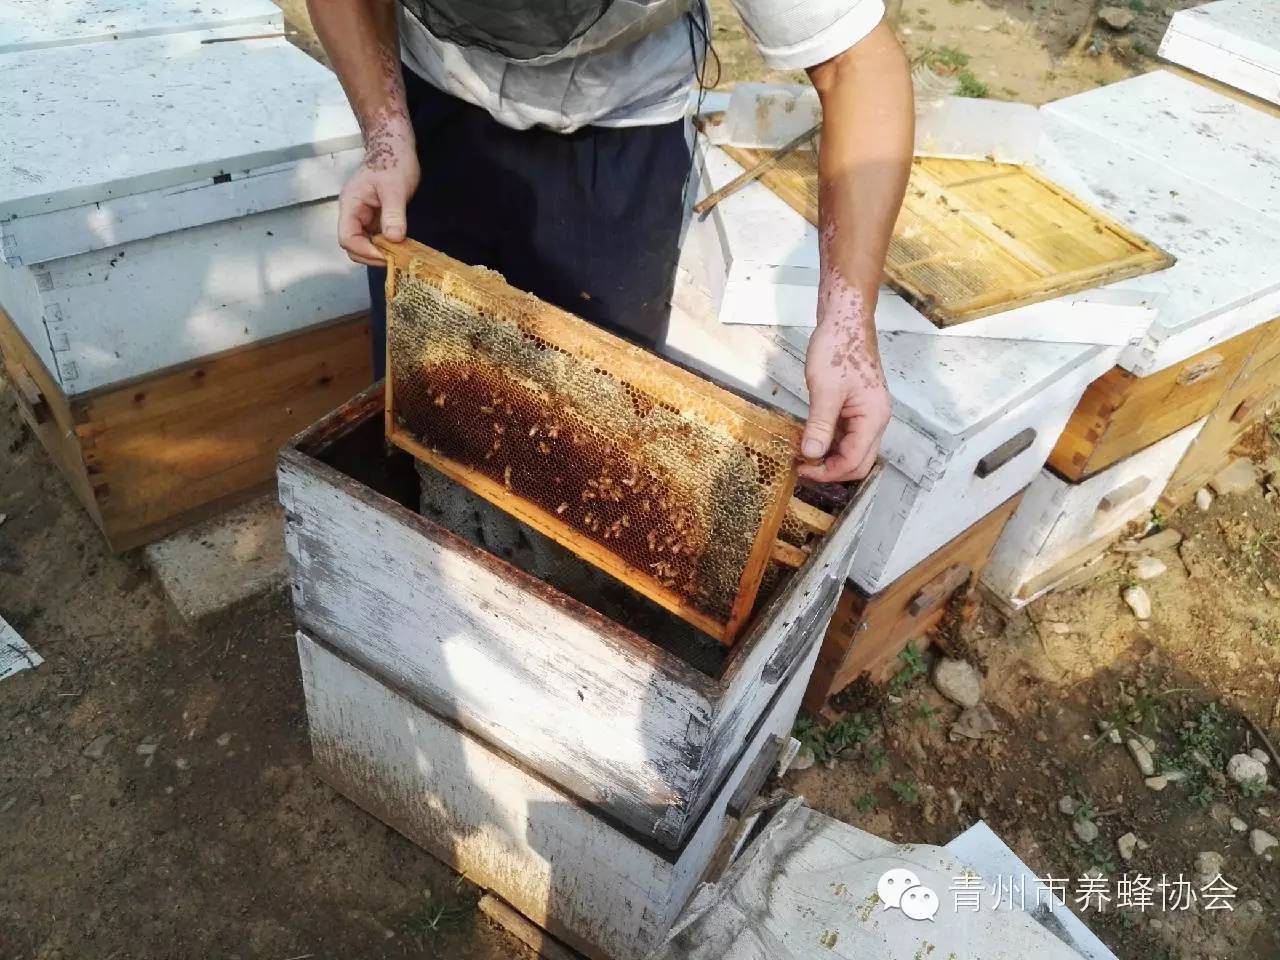 蜂蜜和榴莲能一起吃吗 绿豆粉蜂蜜面膜的功效 蜂蜜加醋可以吃吗 油菜蜂蜜好不好 蜂蜜结晶是好是坏